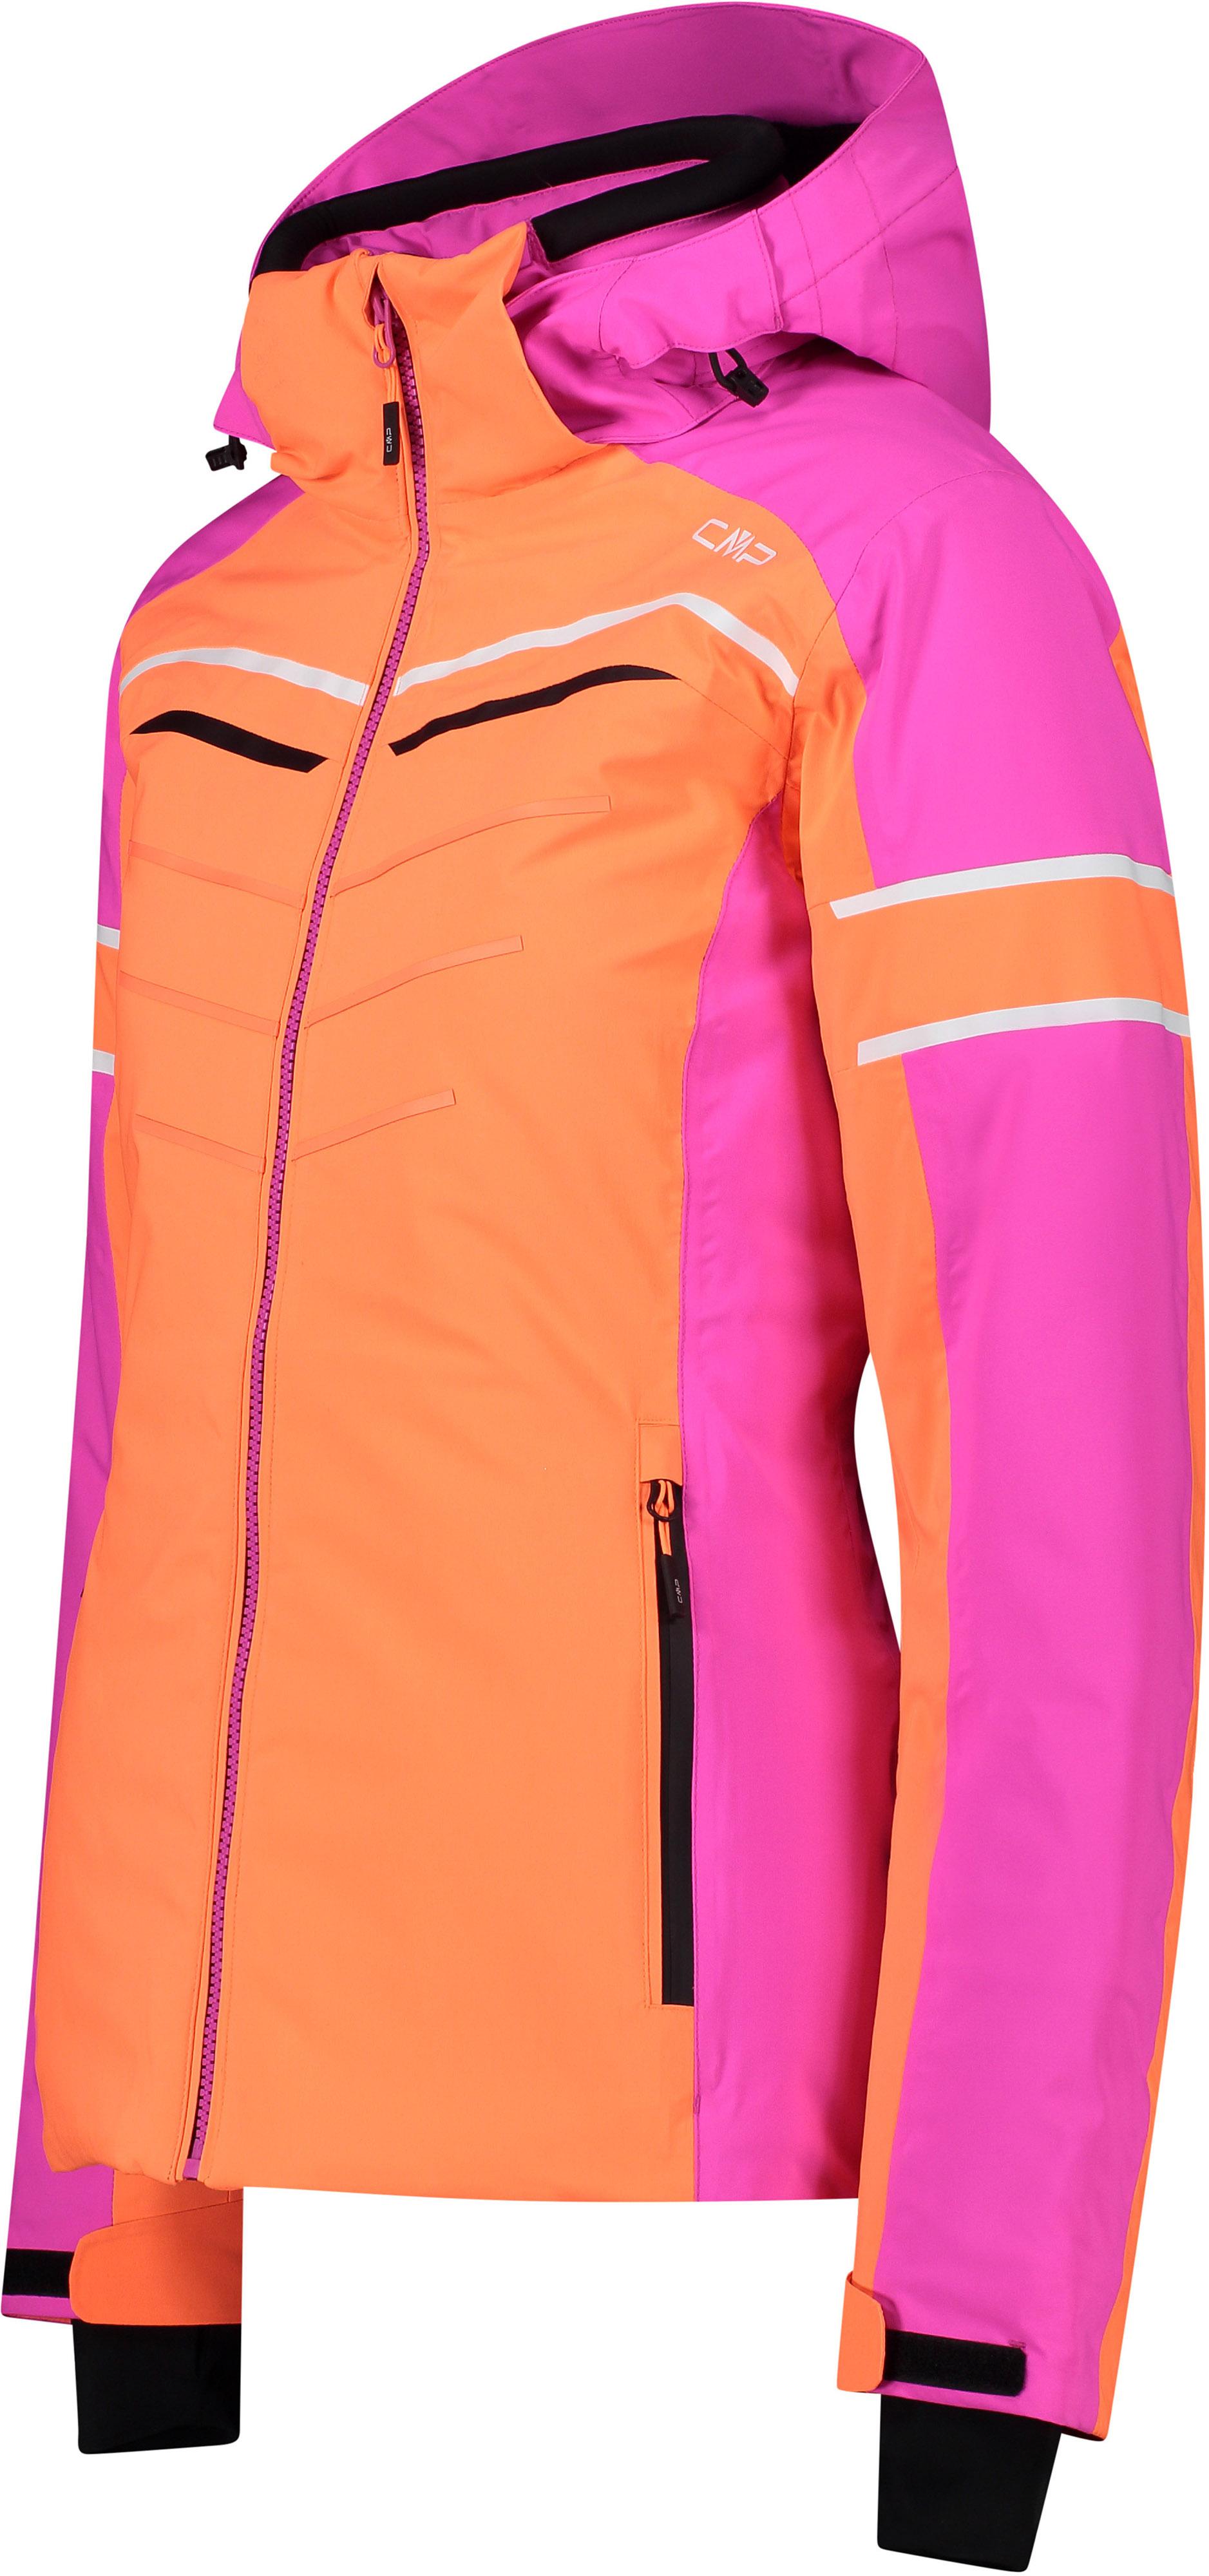 CMP WOMAN von flamingo im Skijacke JACKET fluo HOOD Online Damen kaufen ZIP SportScheck Shop